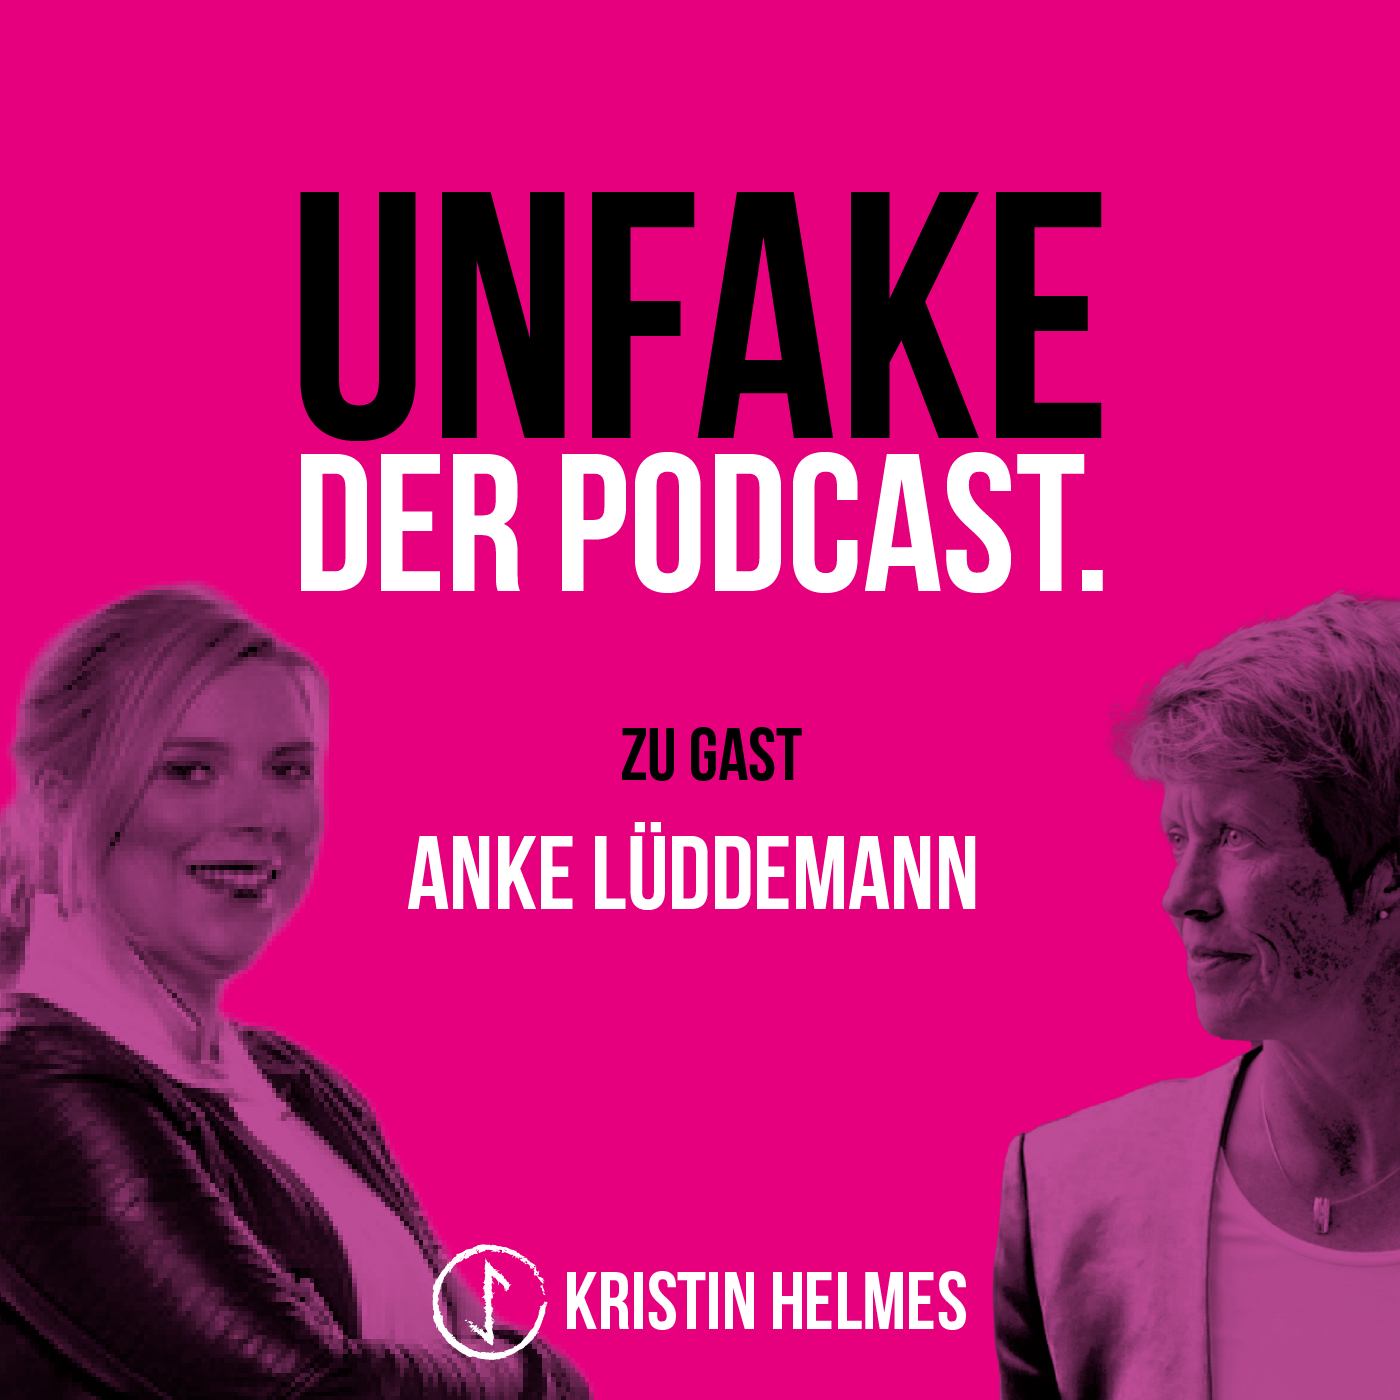 016 Unfake mit Anke Lüddemann Teil 1